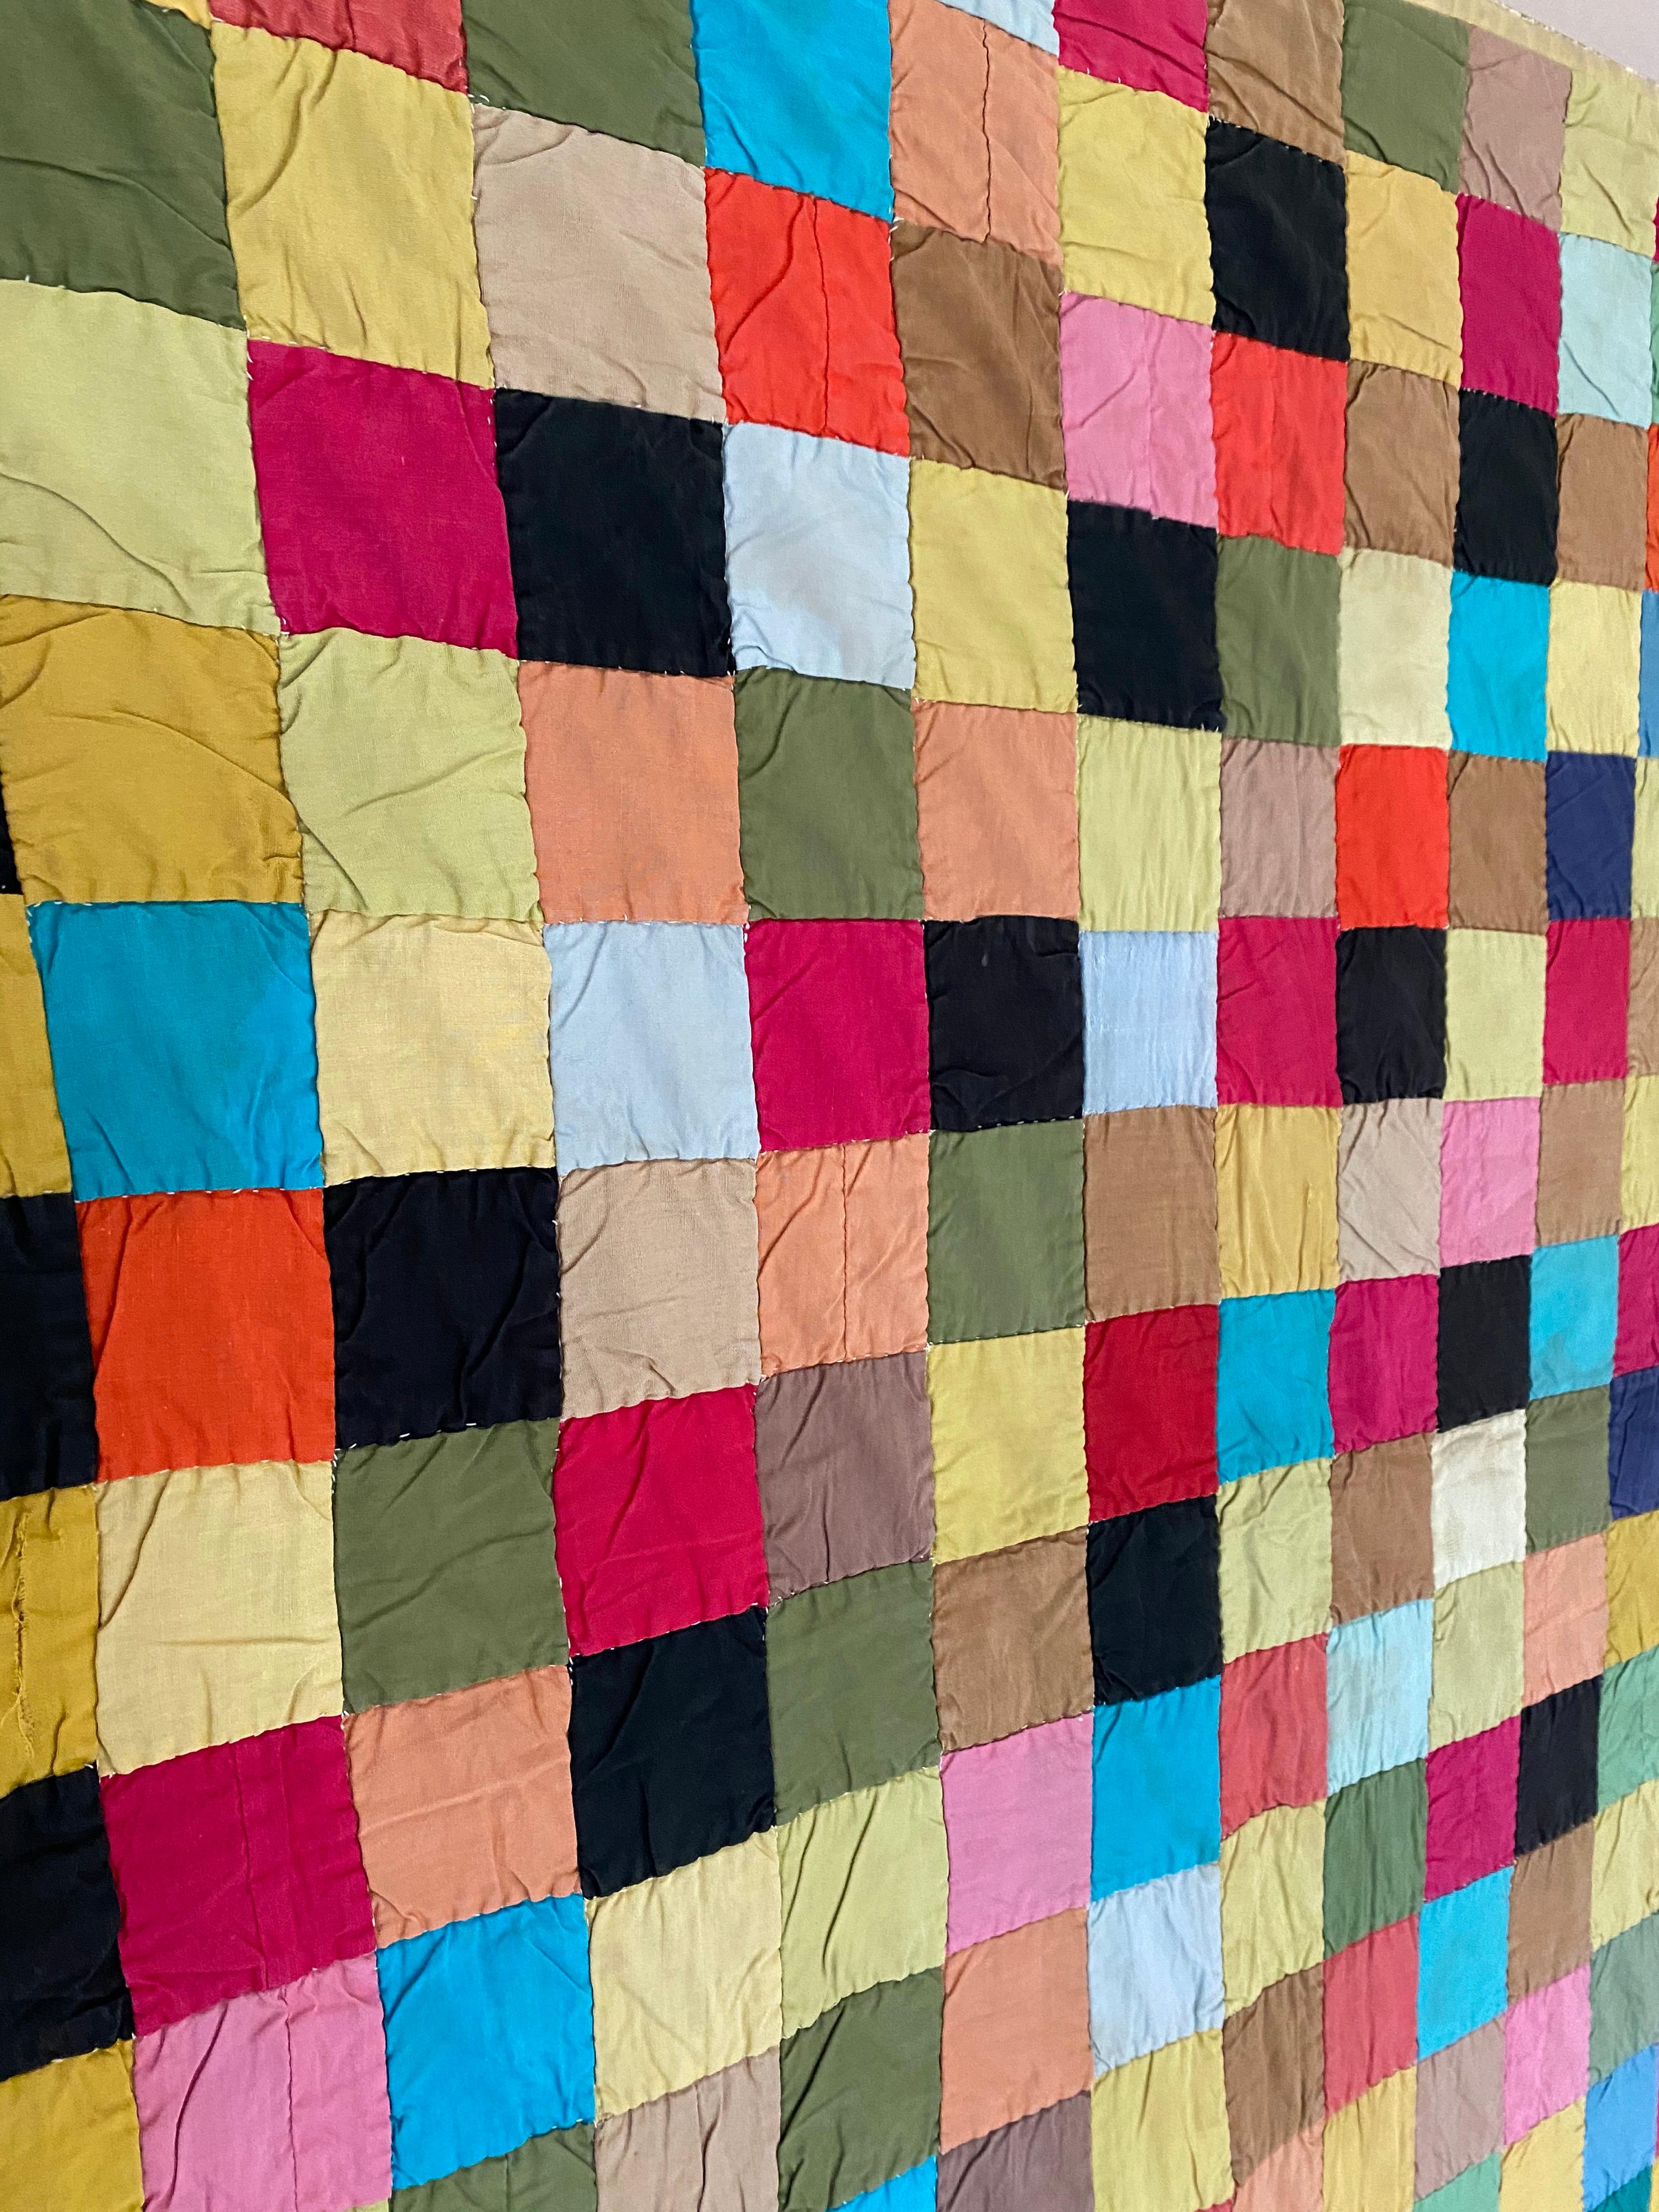 Ein quadratischer Patchwork-Quilt aus dem frühen 20. Jahrhundert. Bestehend aus mehrfarbigen zusammengesetzten Quadraten. Pennsylvania, frühe 1900er Jahre.